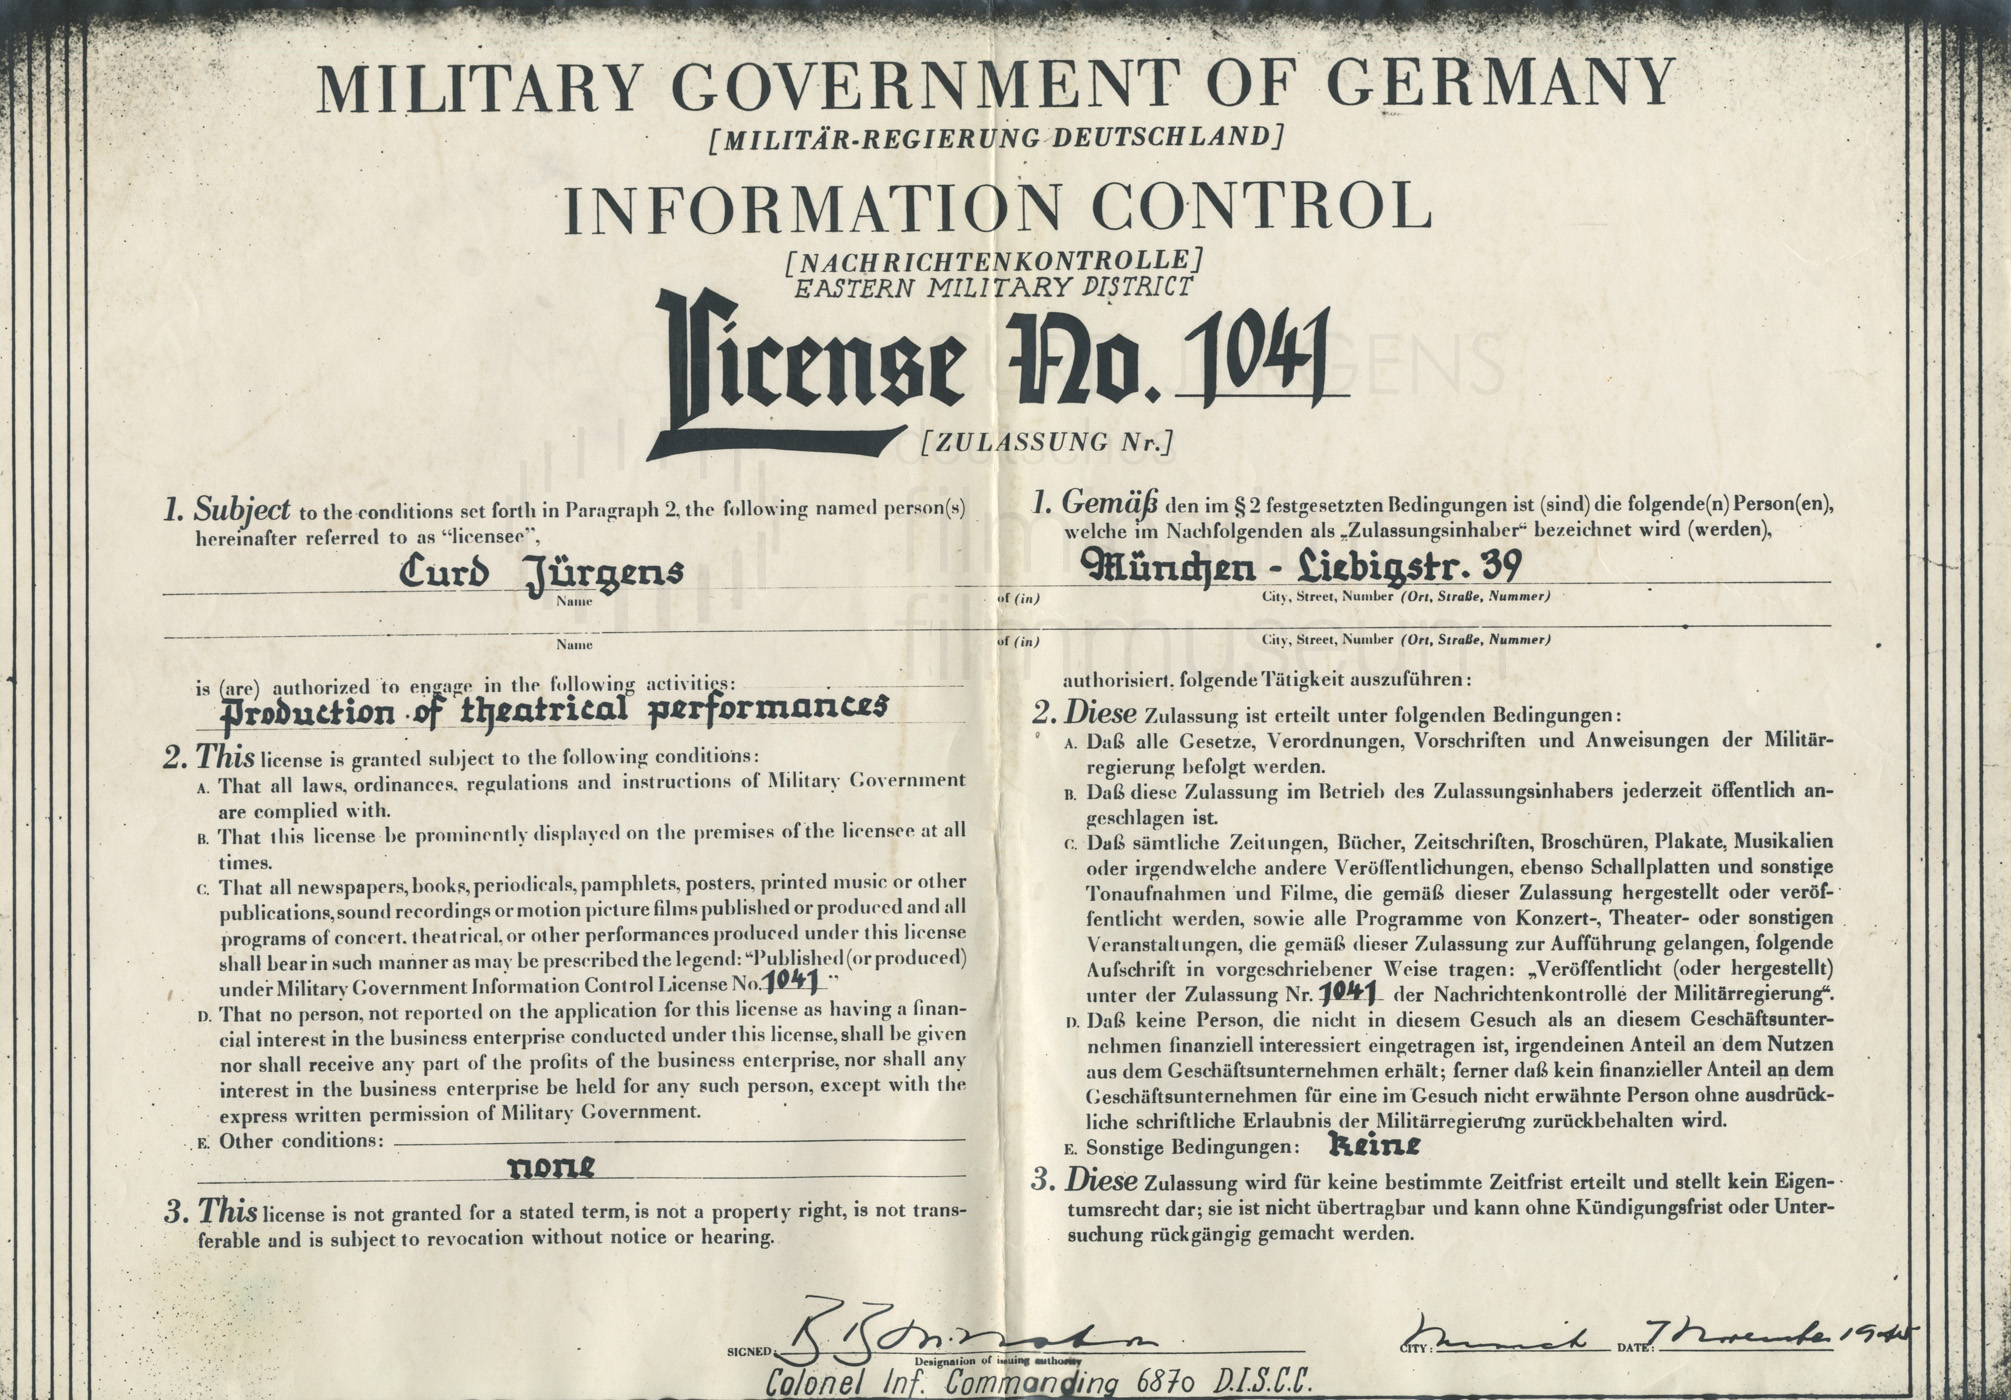 Theaterlizenz Nr. 1041, ausgestellt durch die Information Control (Nachrichtenkontrolle der Militär-Regierung). München, 7.11.1945